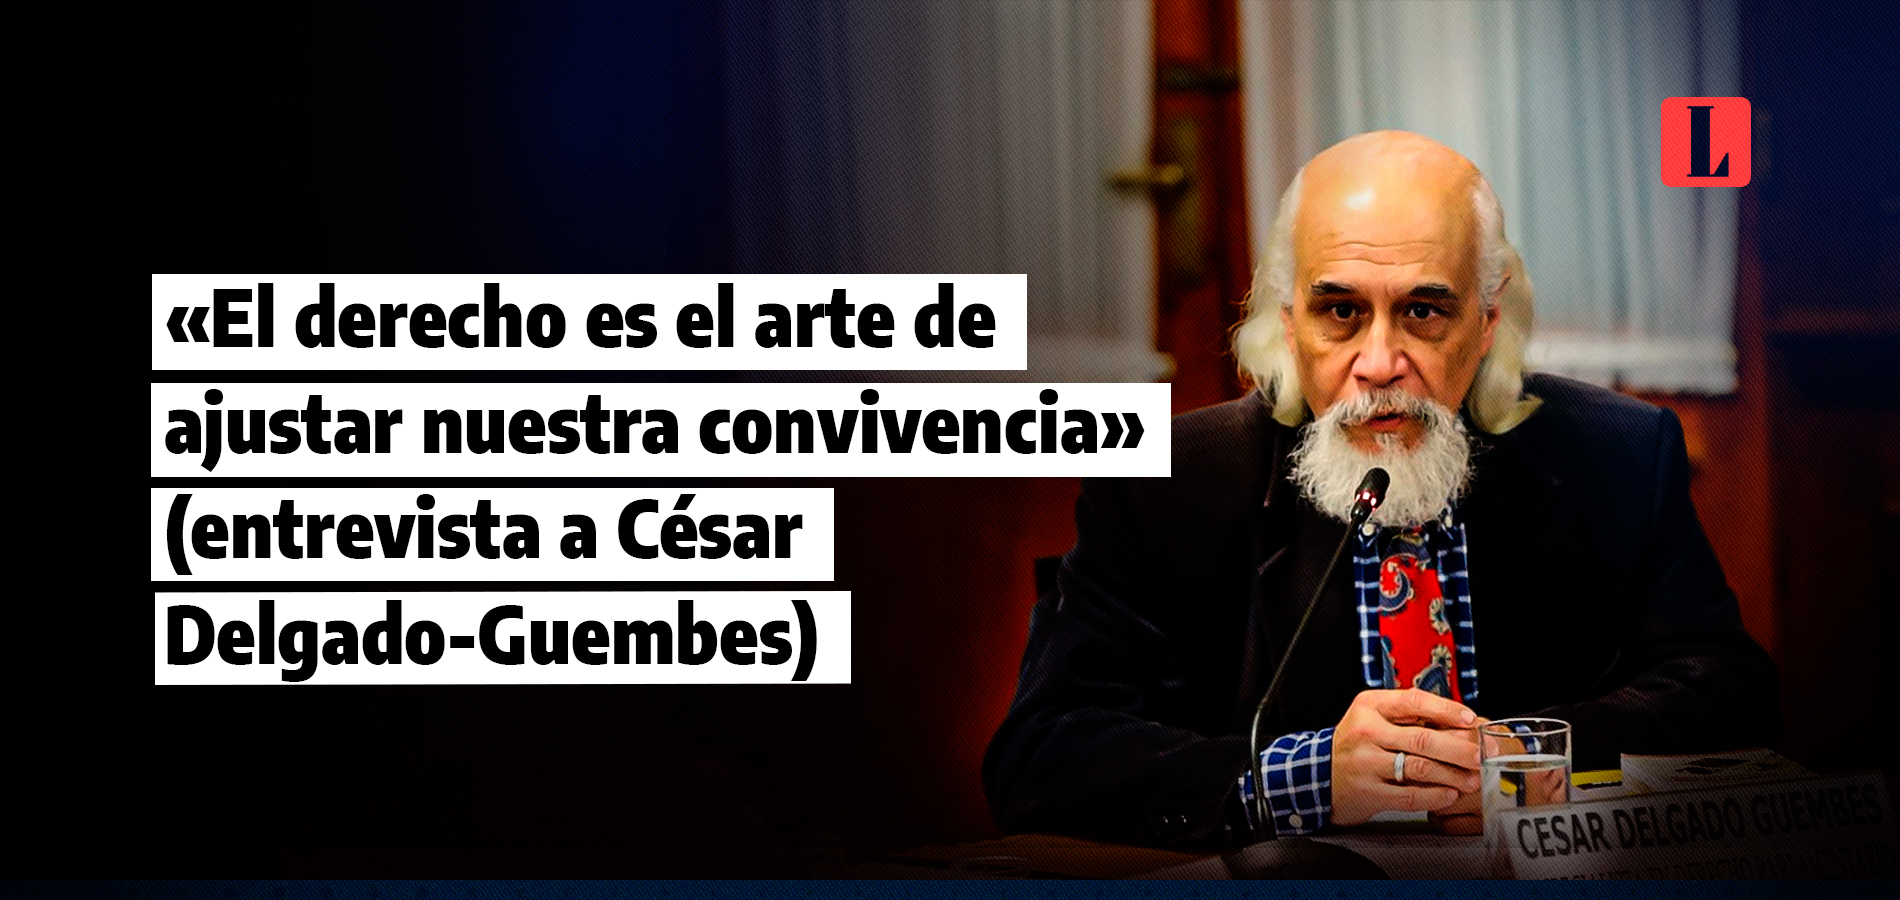 César Delgado-Guembes: «El derecho es el arte de ajustar nuestra convivencia» (entrevista)